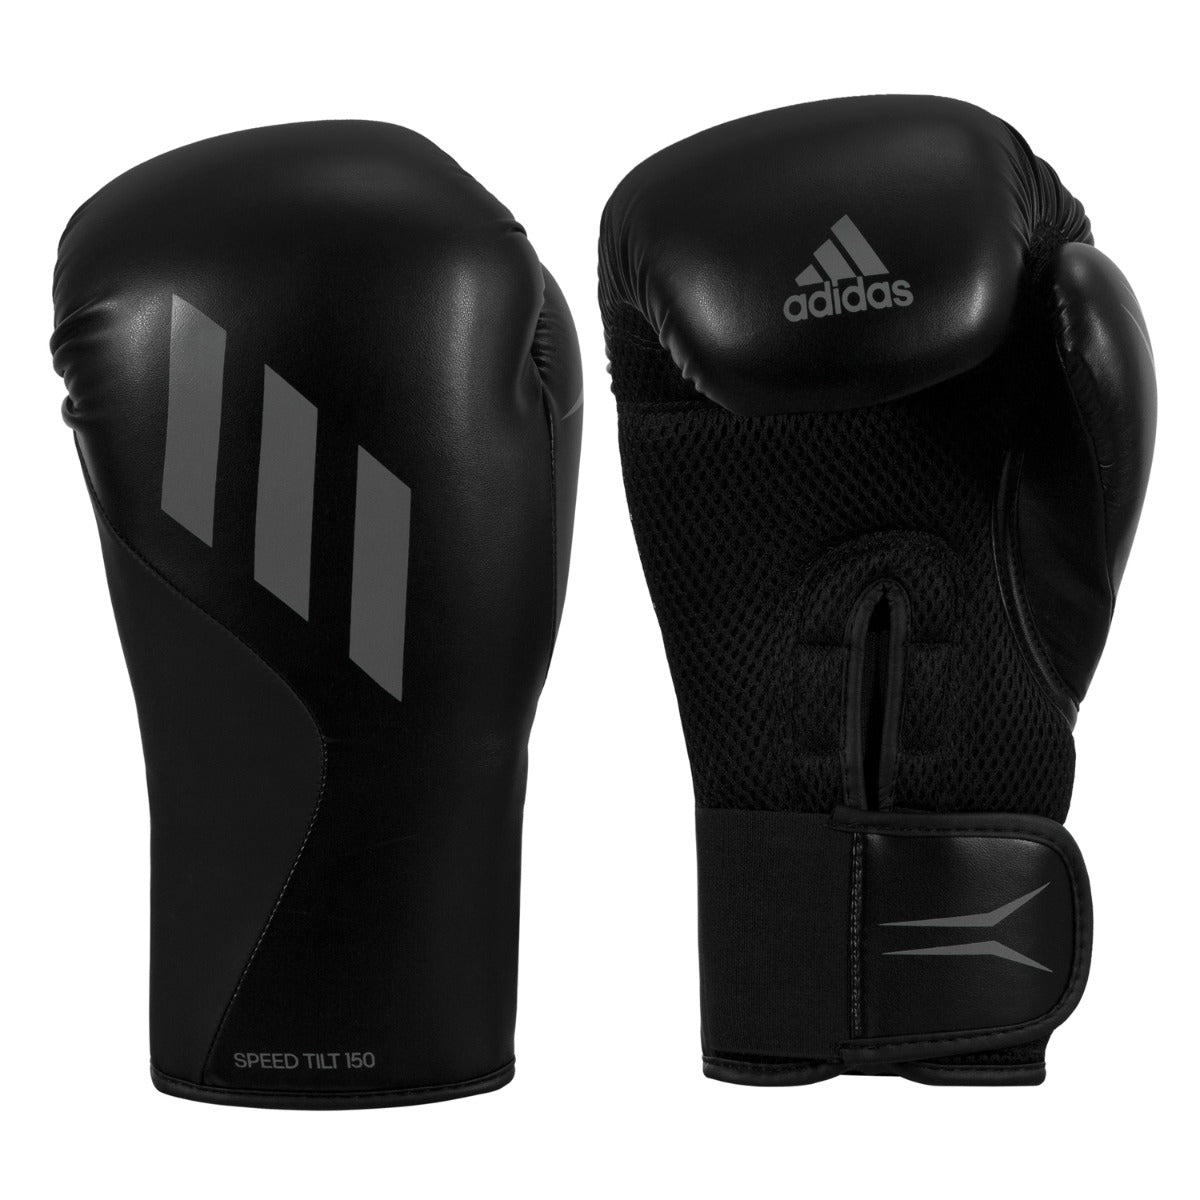 heerlijkheid Politiebureau bevestigen ADIDAS Speed Tilt 150 Boxing Training Gloves